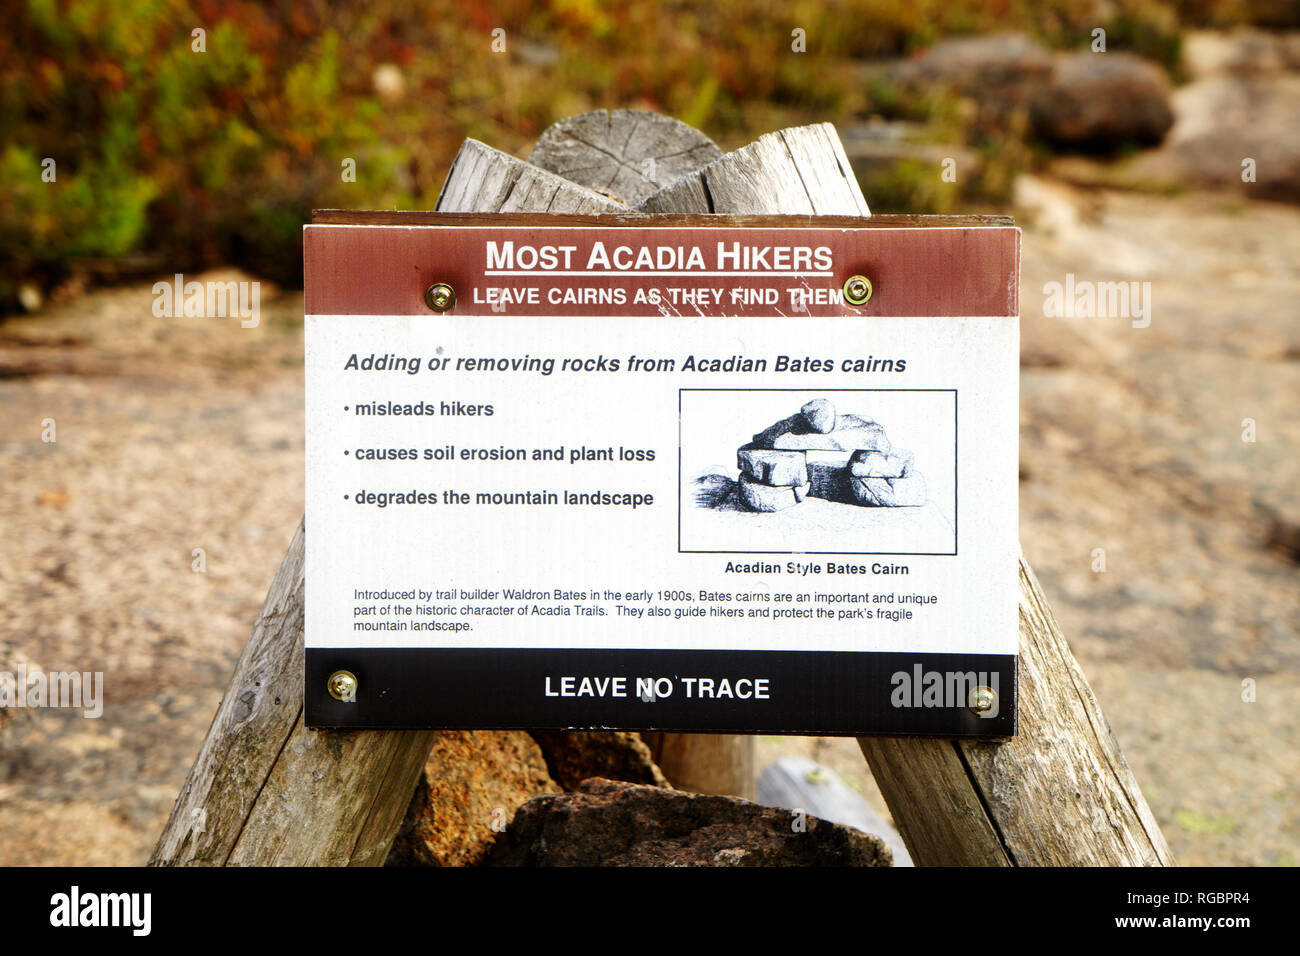 Segno di avvertimento per gli escursionisti lasciare Acadian Bates cairns come li troveranno.Parco Nazionale di Acadia, Maine, Stati Uniti d'America. Foto Stock